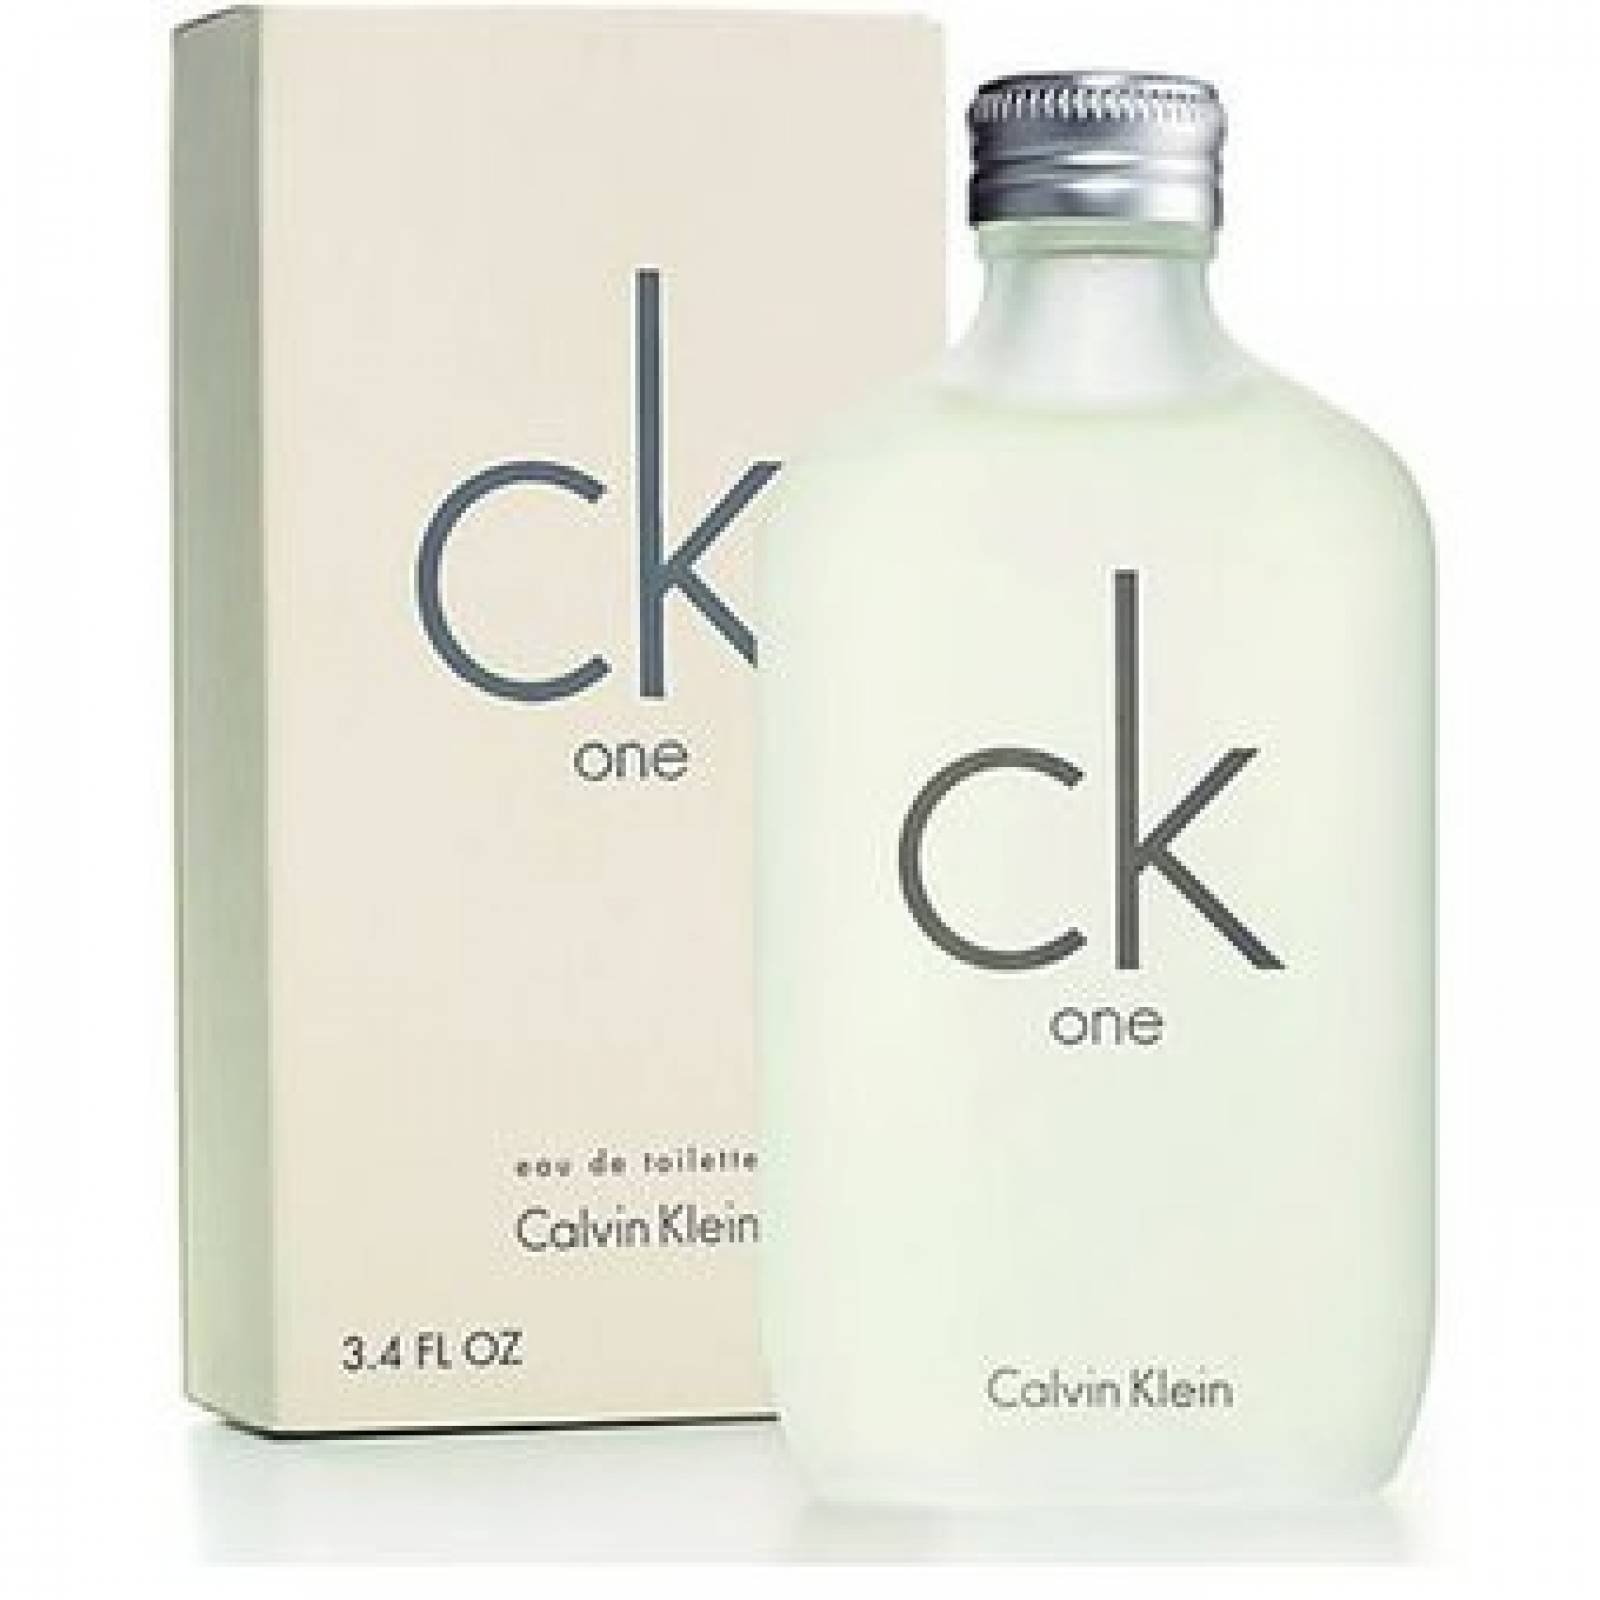 CK ONE Unisex De Calvin Klein Eau De Toilette 100 ml